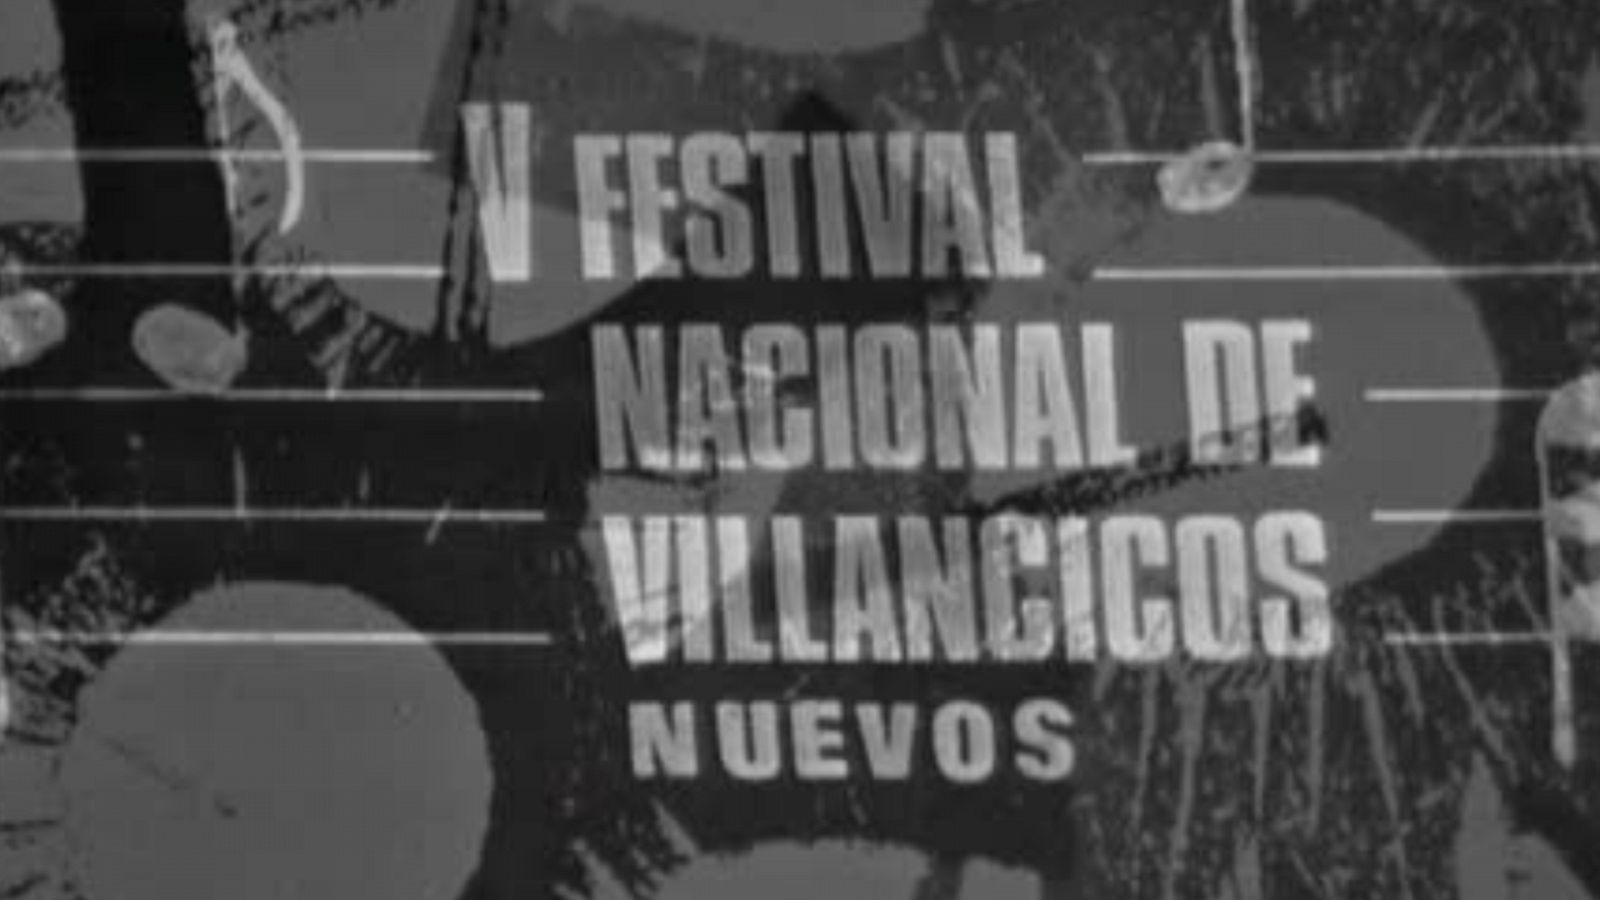 V Festival de Villancicos Nuevos